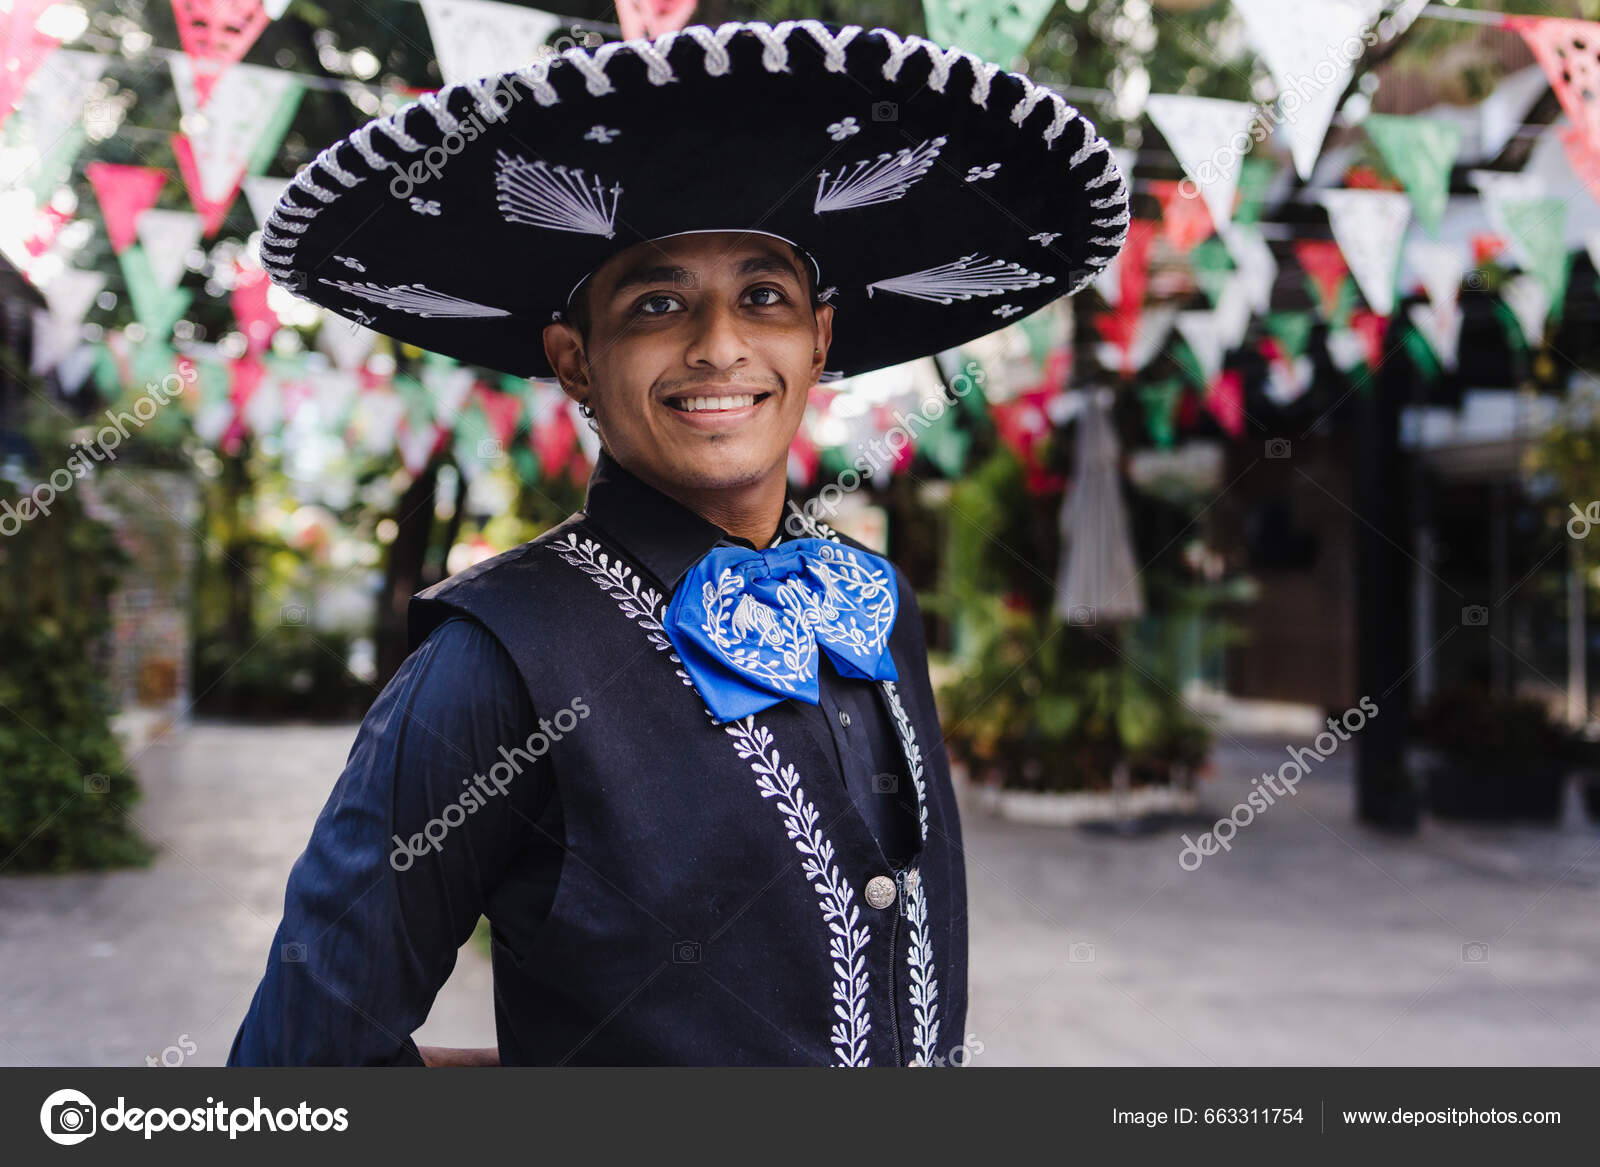 Hombre Latino Vestido Como Mariachi Tradicional Mexicano Desfile Festival  Cultural: fotografía de stock © marcoscastillo #663311754 | Depositphotos